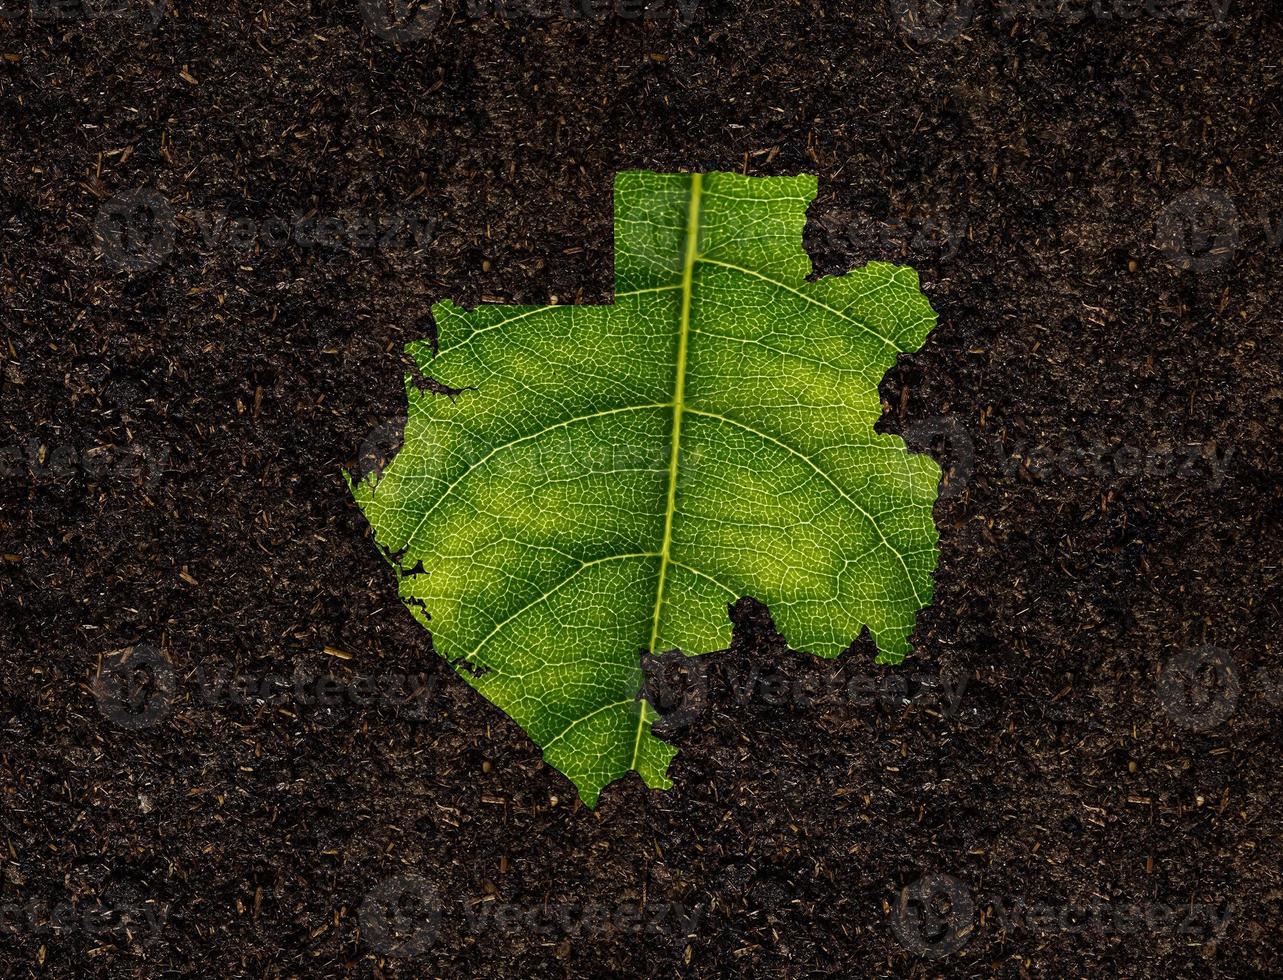 mapa de gabón hecho de hojas verdes, mapa de ecología conceptual hoja verde en el fondo del suelo foto